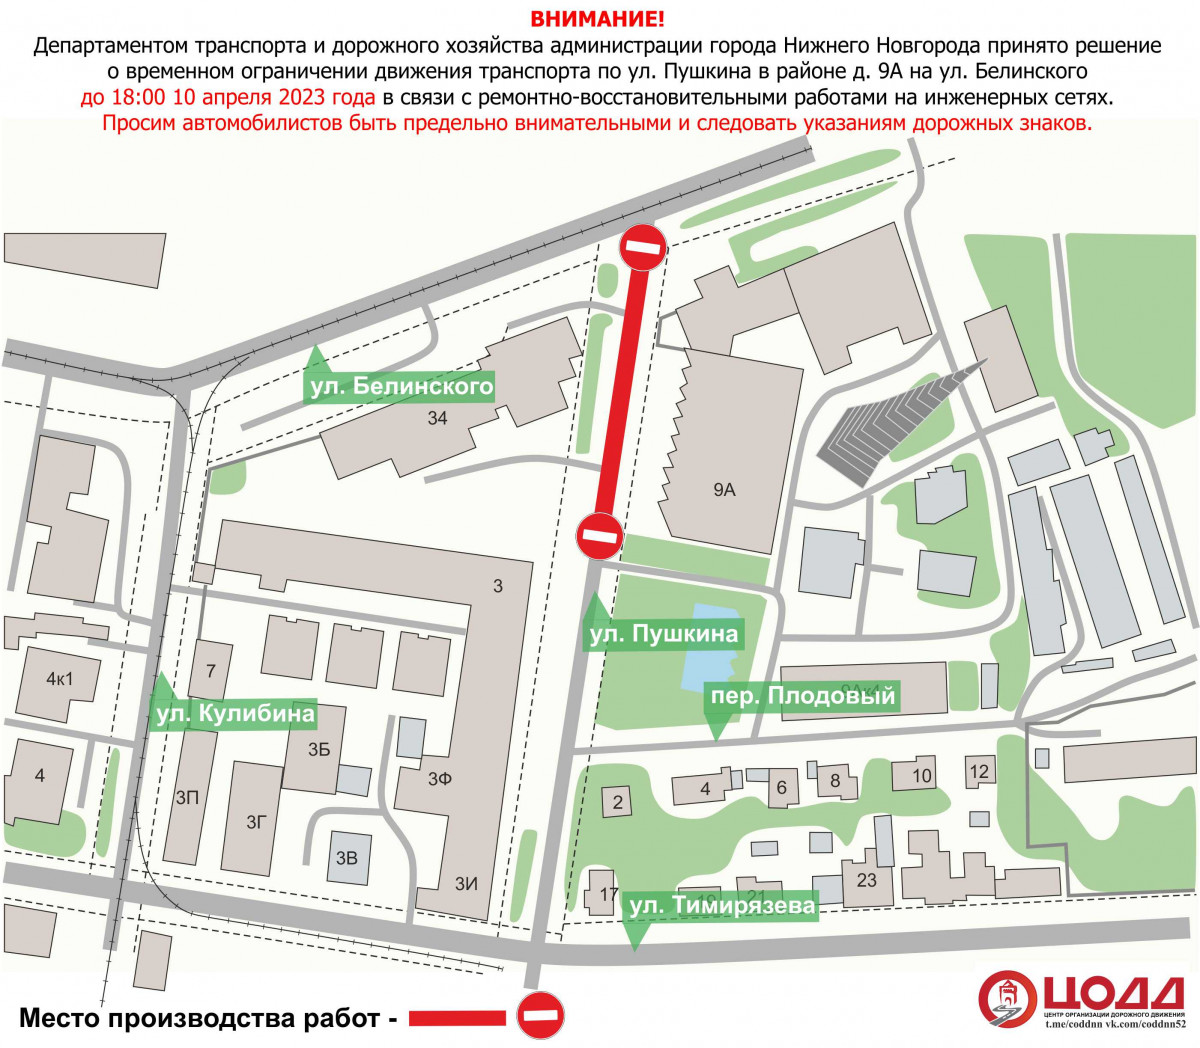 Движение транспорта приостановят на участке улицы Пушкина 10 апреля